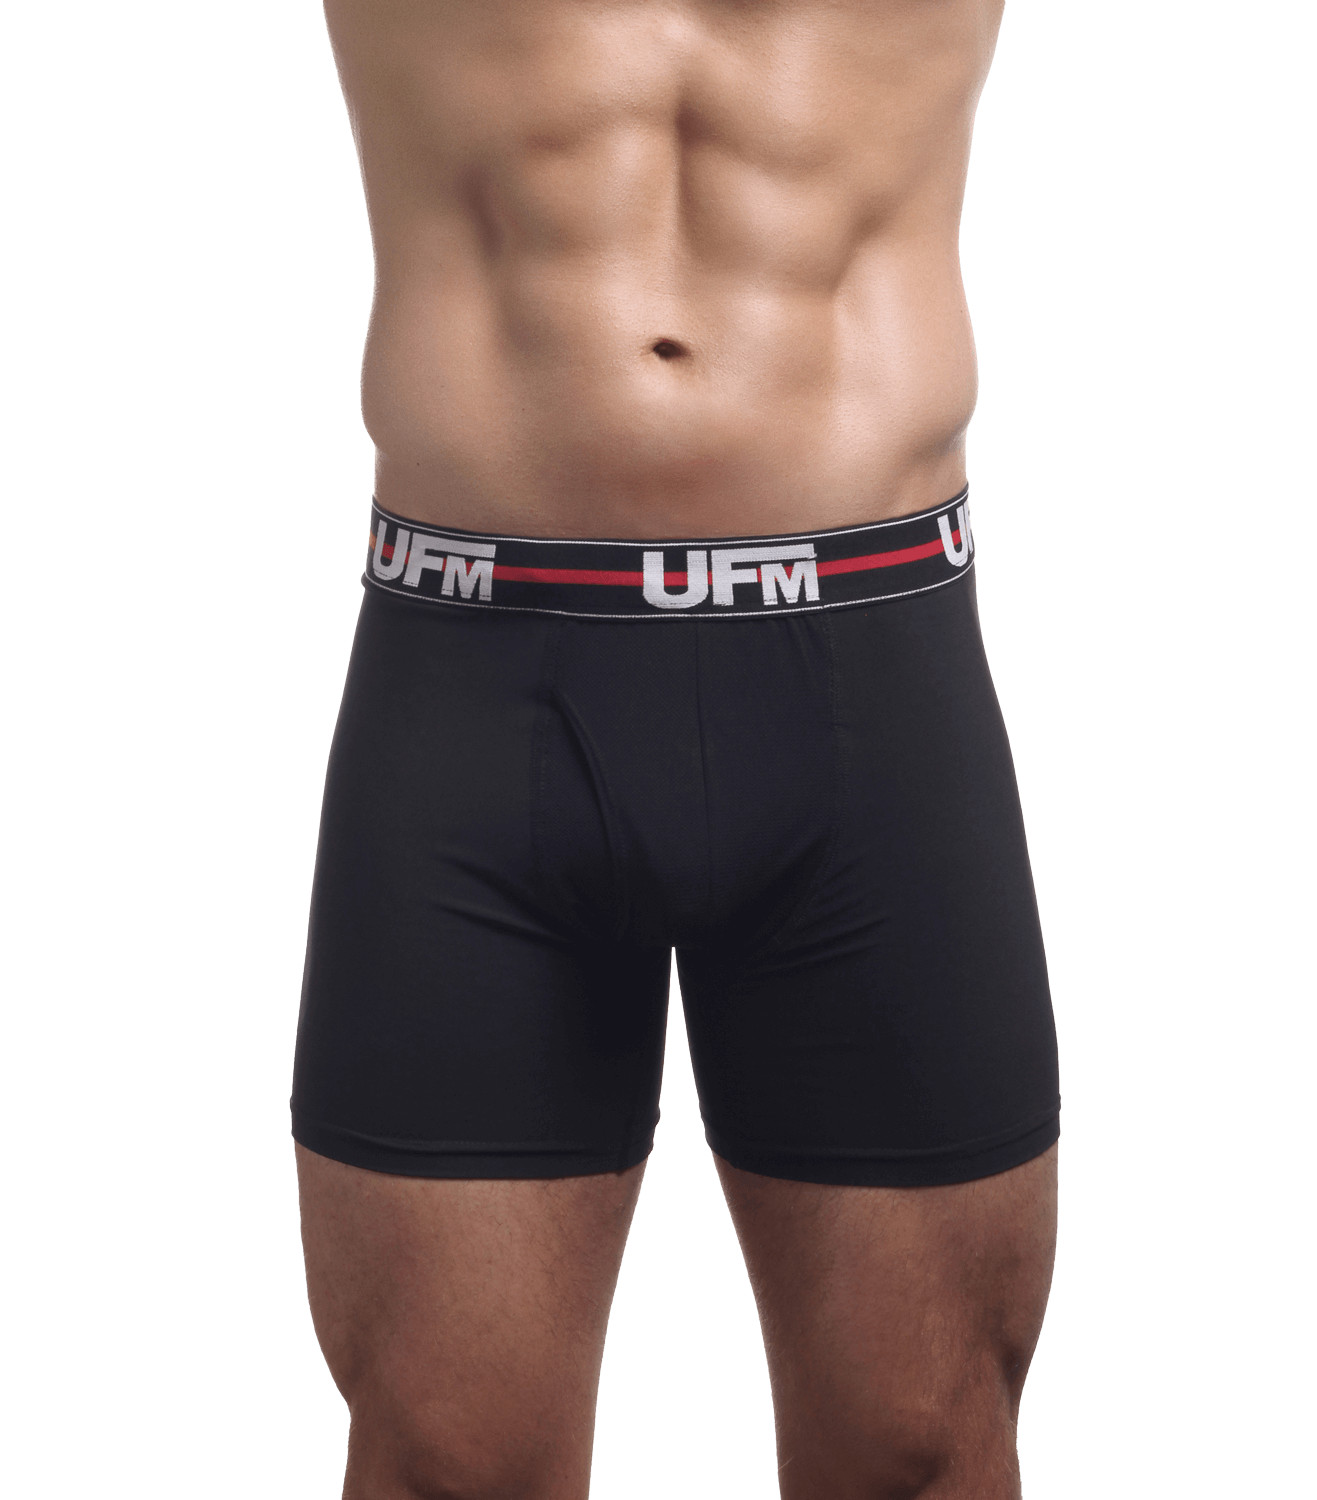 Black Boxer Briefs 6 Inch – 1st Gen Athletic Underwear For Men